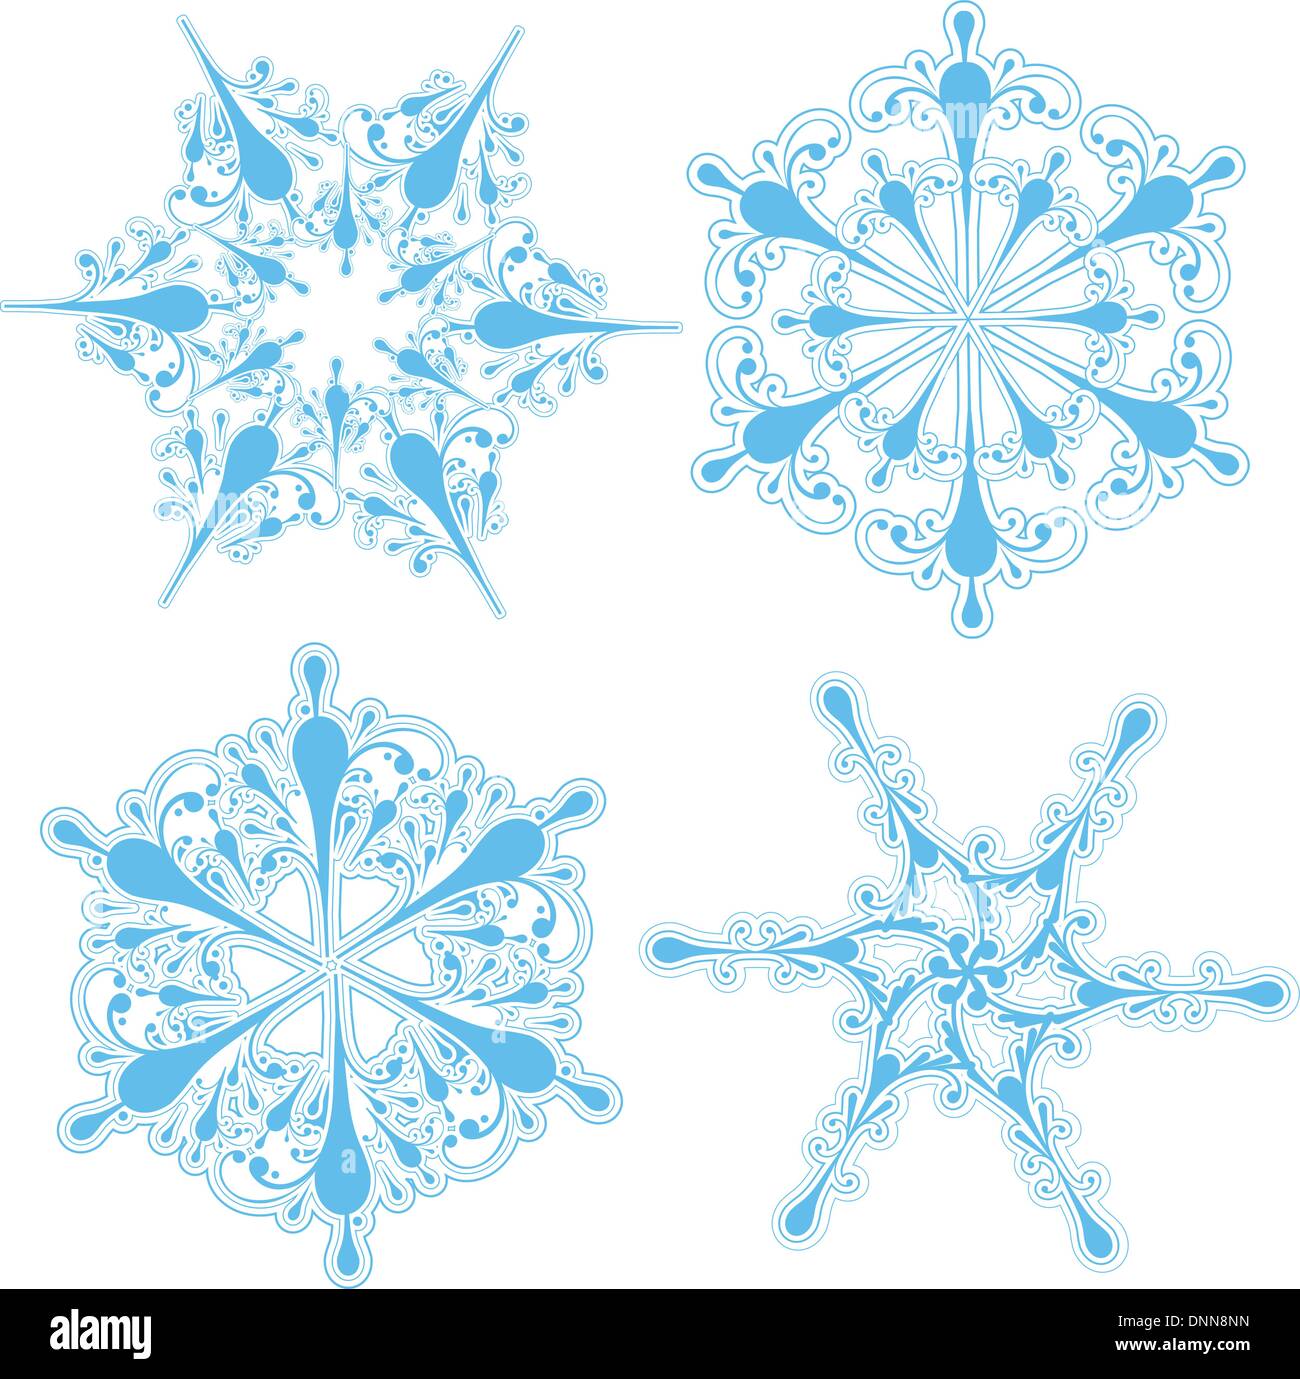 Sammlung von vier detaillierte Schneeflocke-designs Stock Vektor